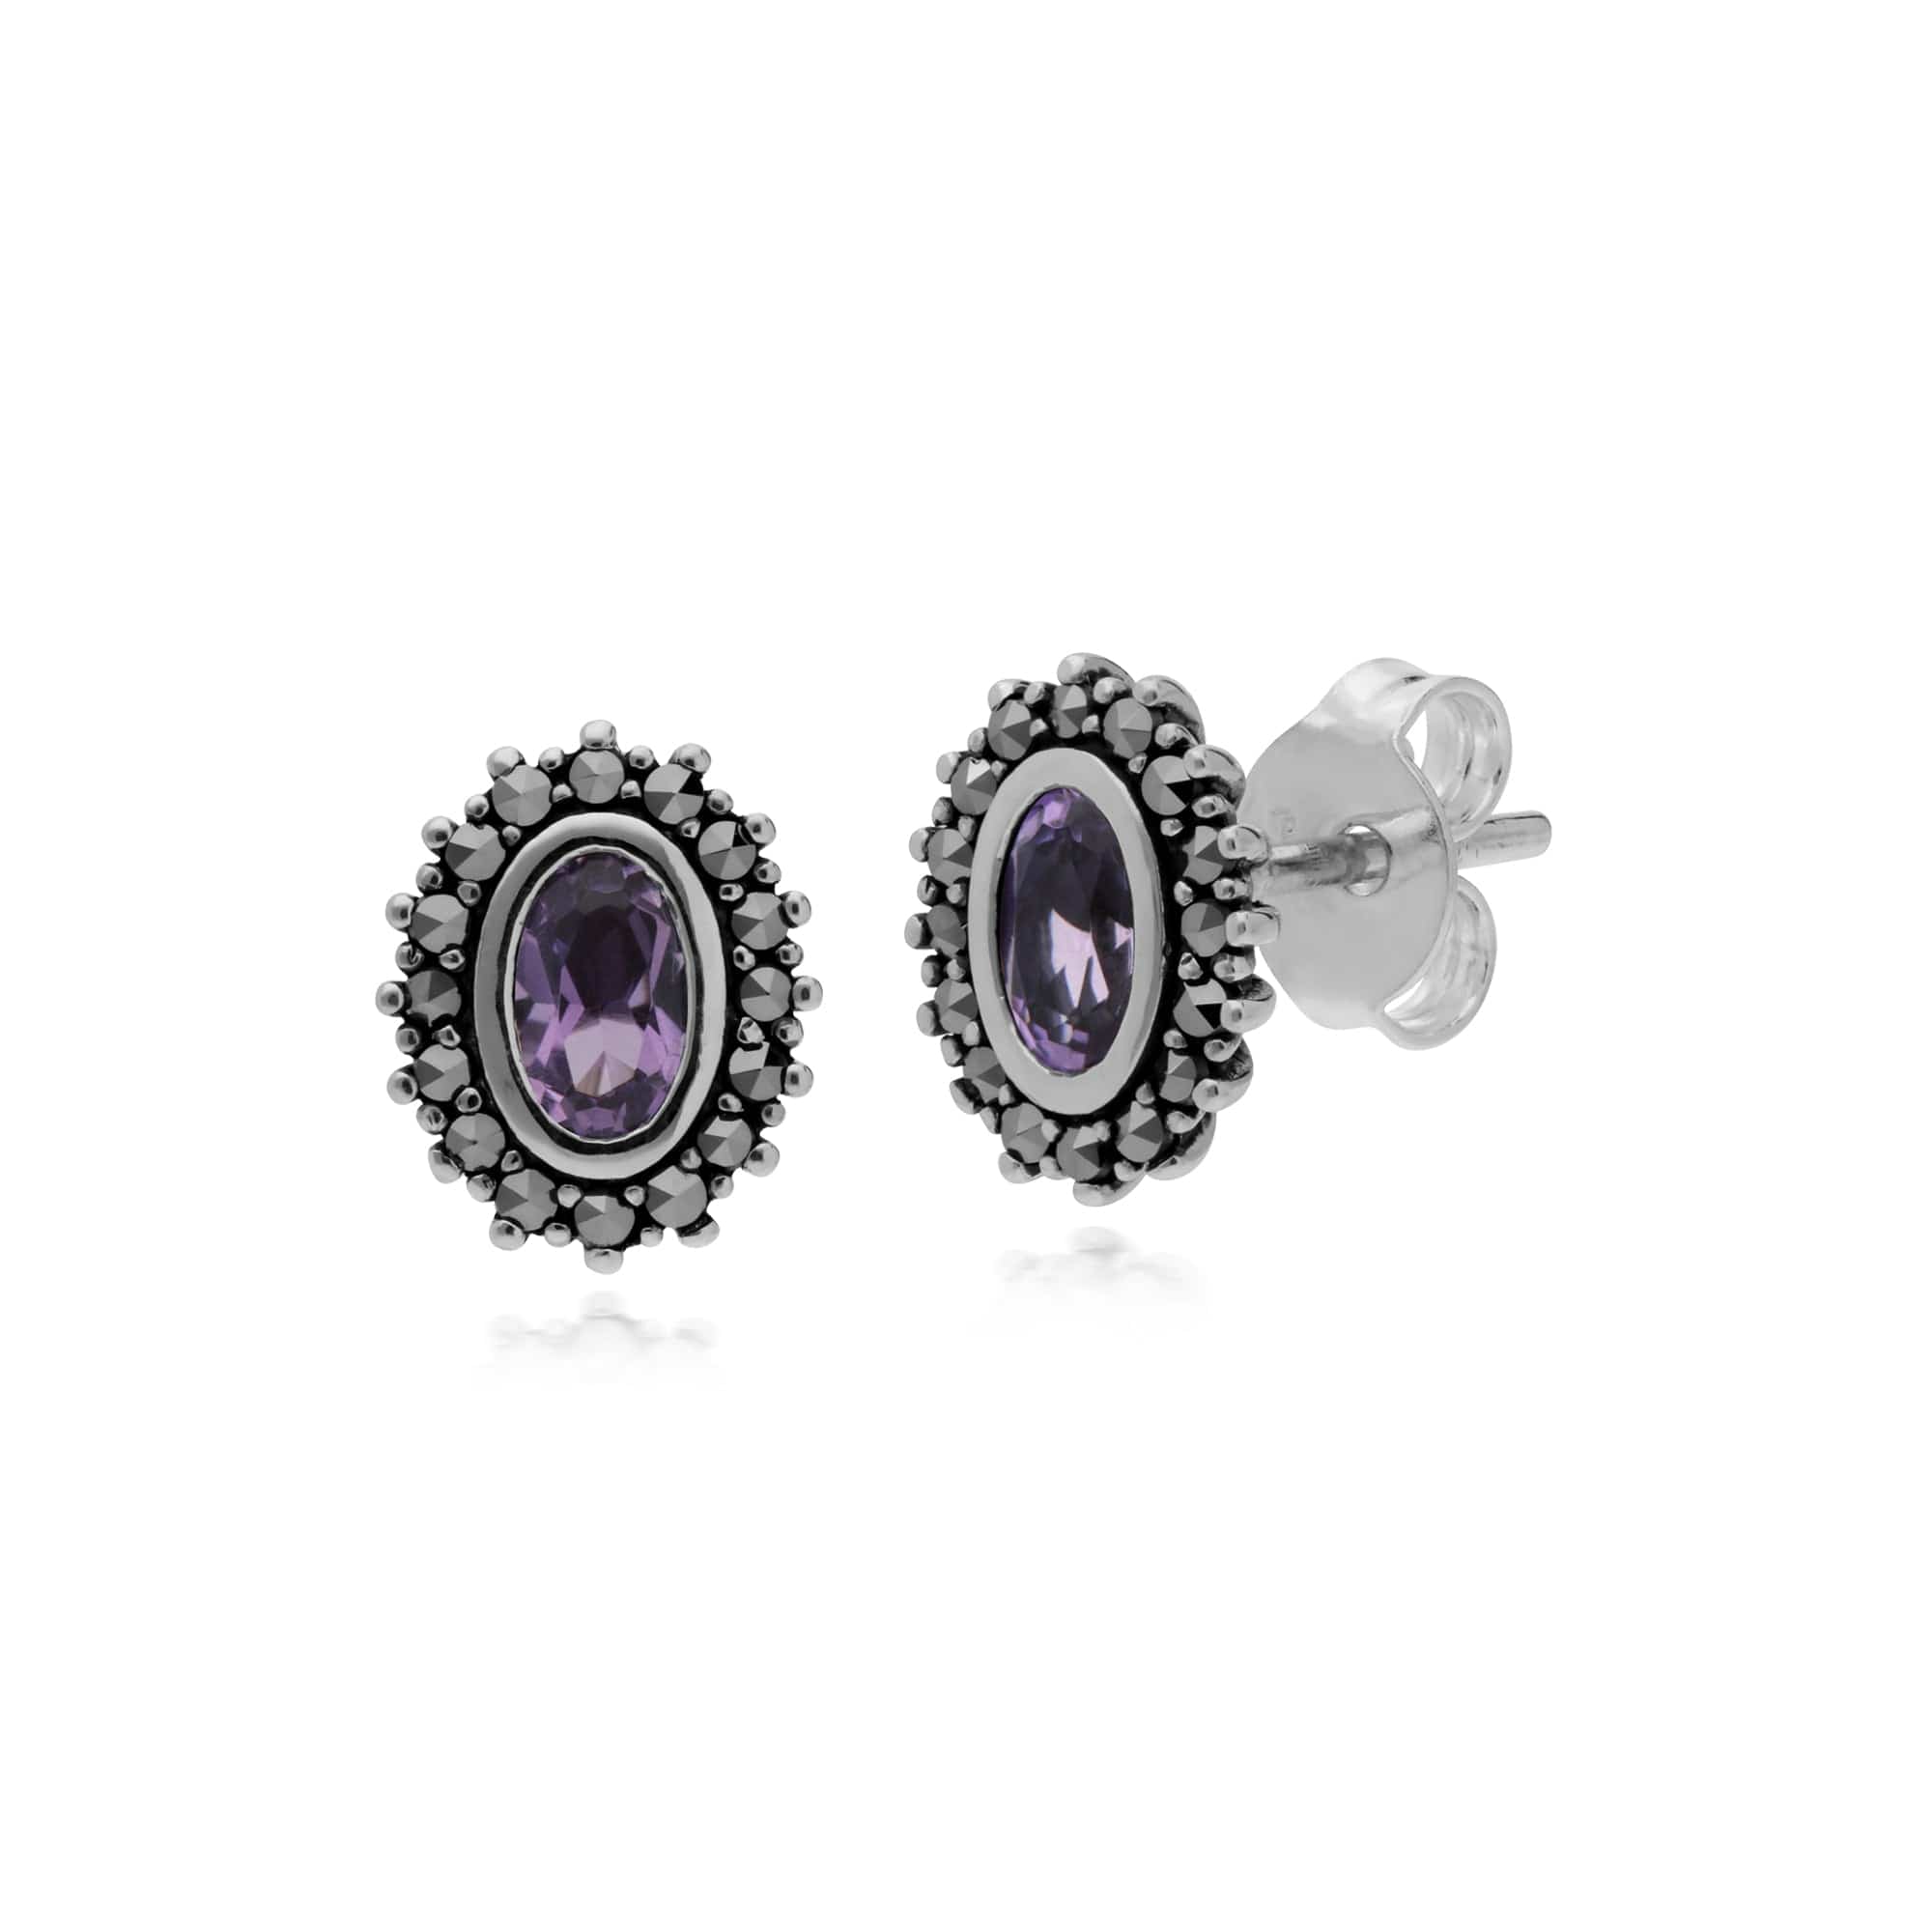 214E860902925 Gemondo Sterling Silver Amethyst & Marcasite February Art Nouveau Stud Earrings 1